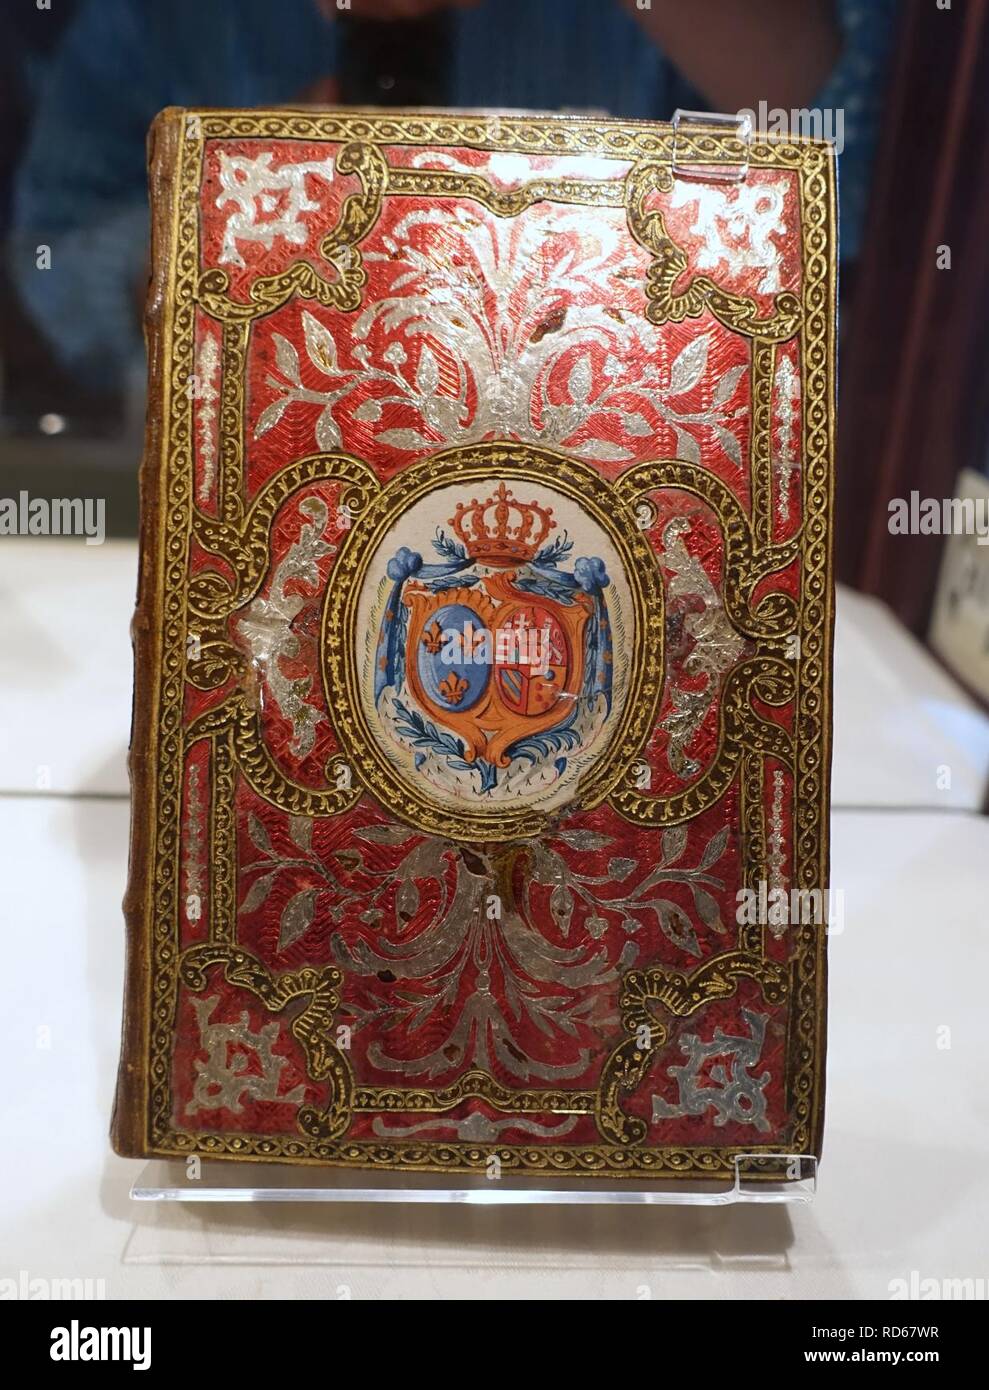 Almanach royal, Ifremer, MDCCLXXVIII Paris, Le Breton, 1777, administré par Marie-Antoinette dont les armes ornent le capot - Waddesdon Manor - Buckinghamshire, Angleterre - Banque D'Images